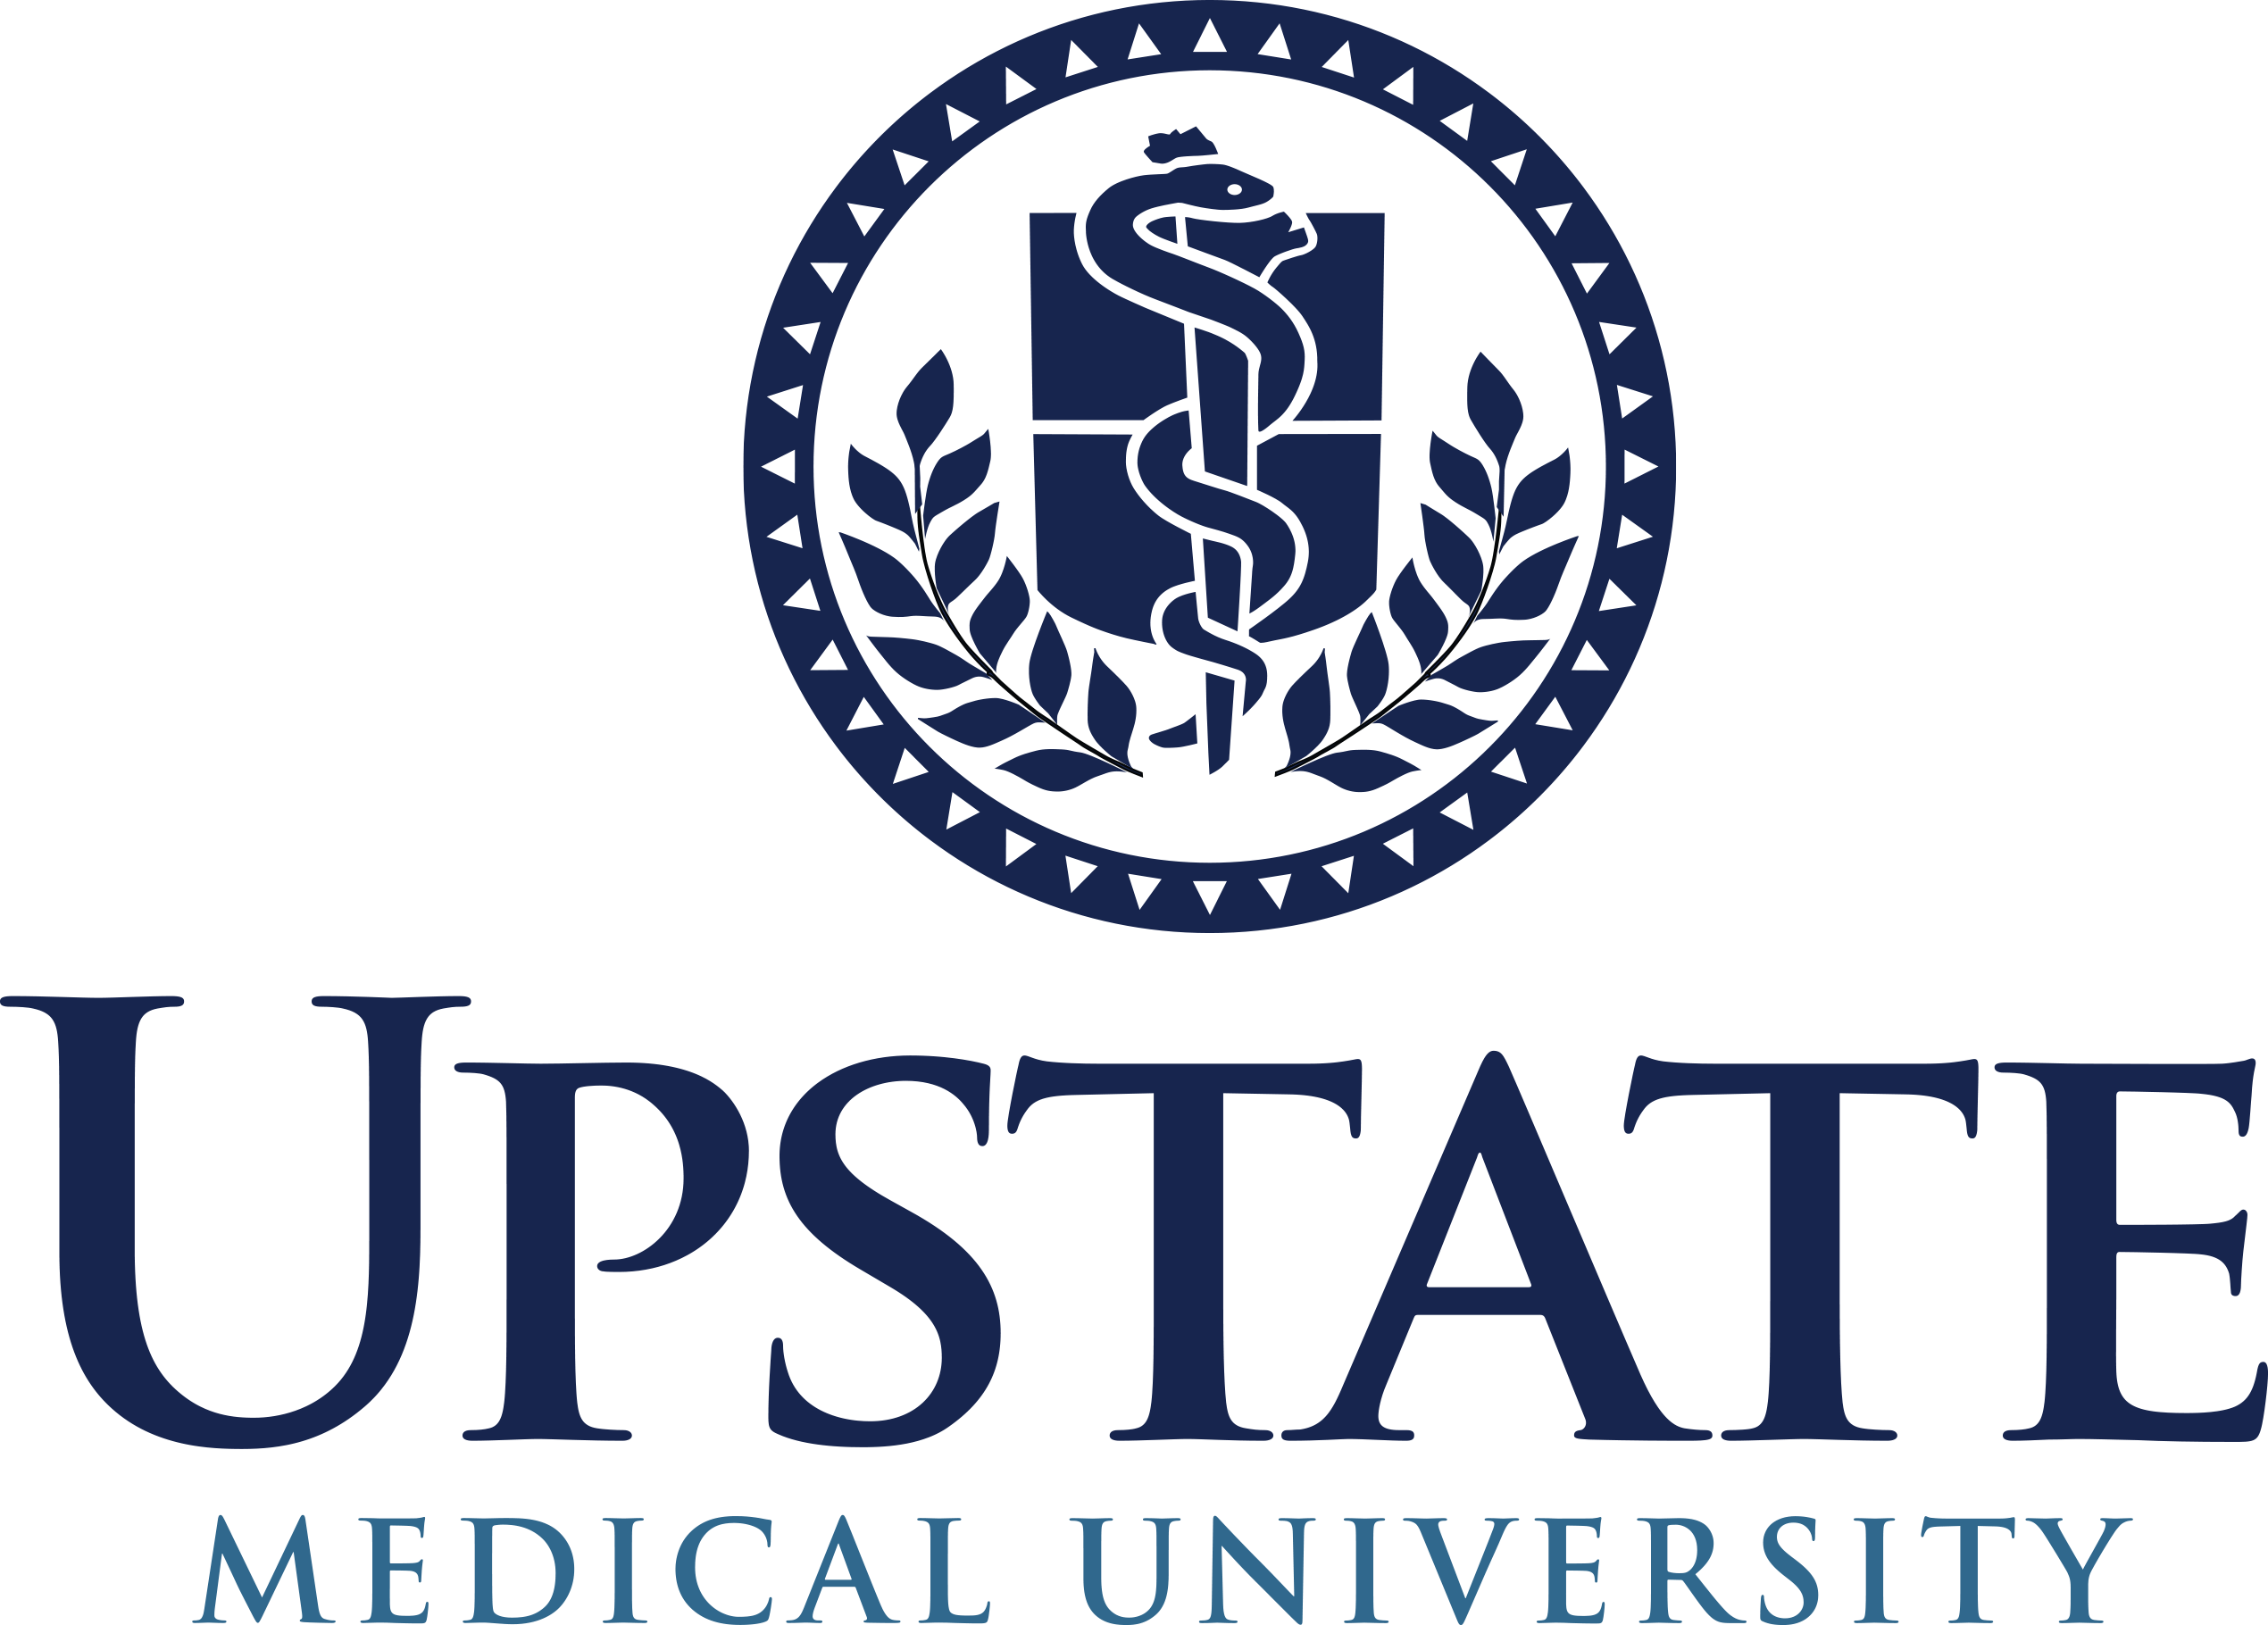 Medical White Logo - Upstate Logos. Marketing Communications. SUNY Upstate Medical